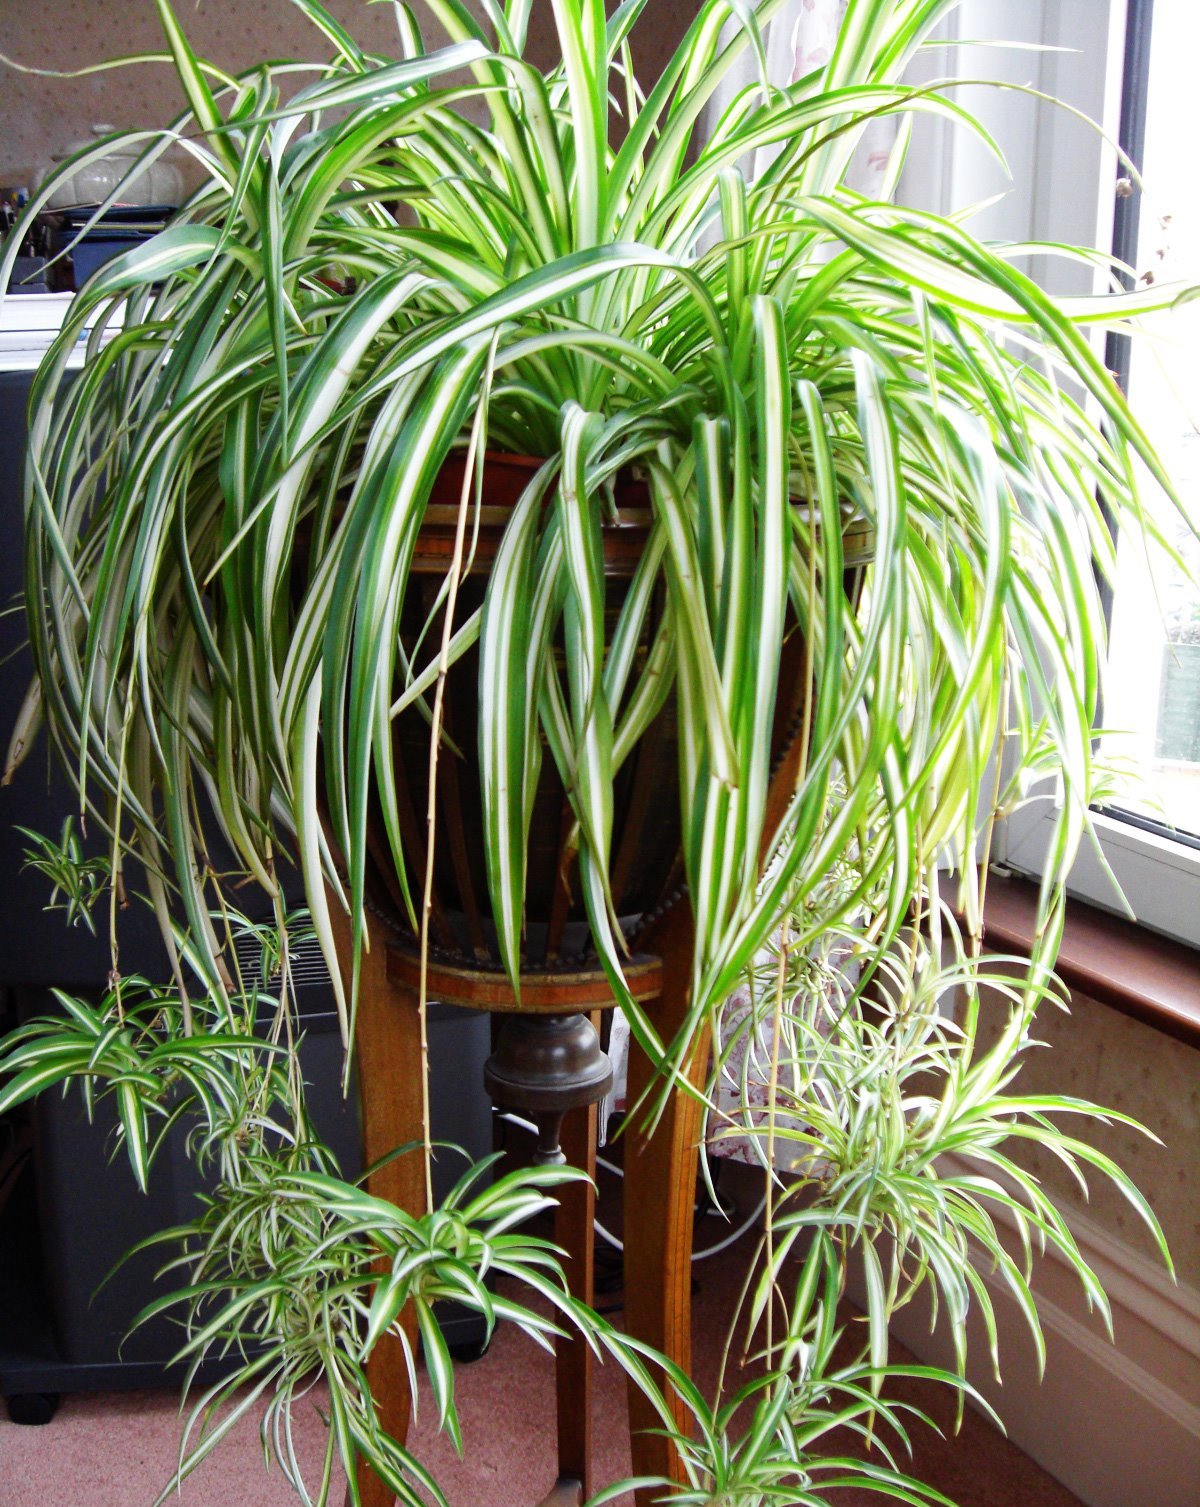 Комнатное растение с длинными узкими листьями